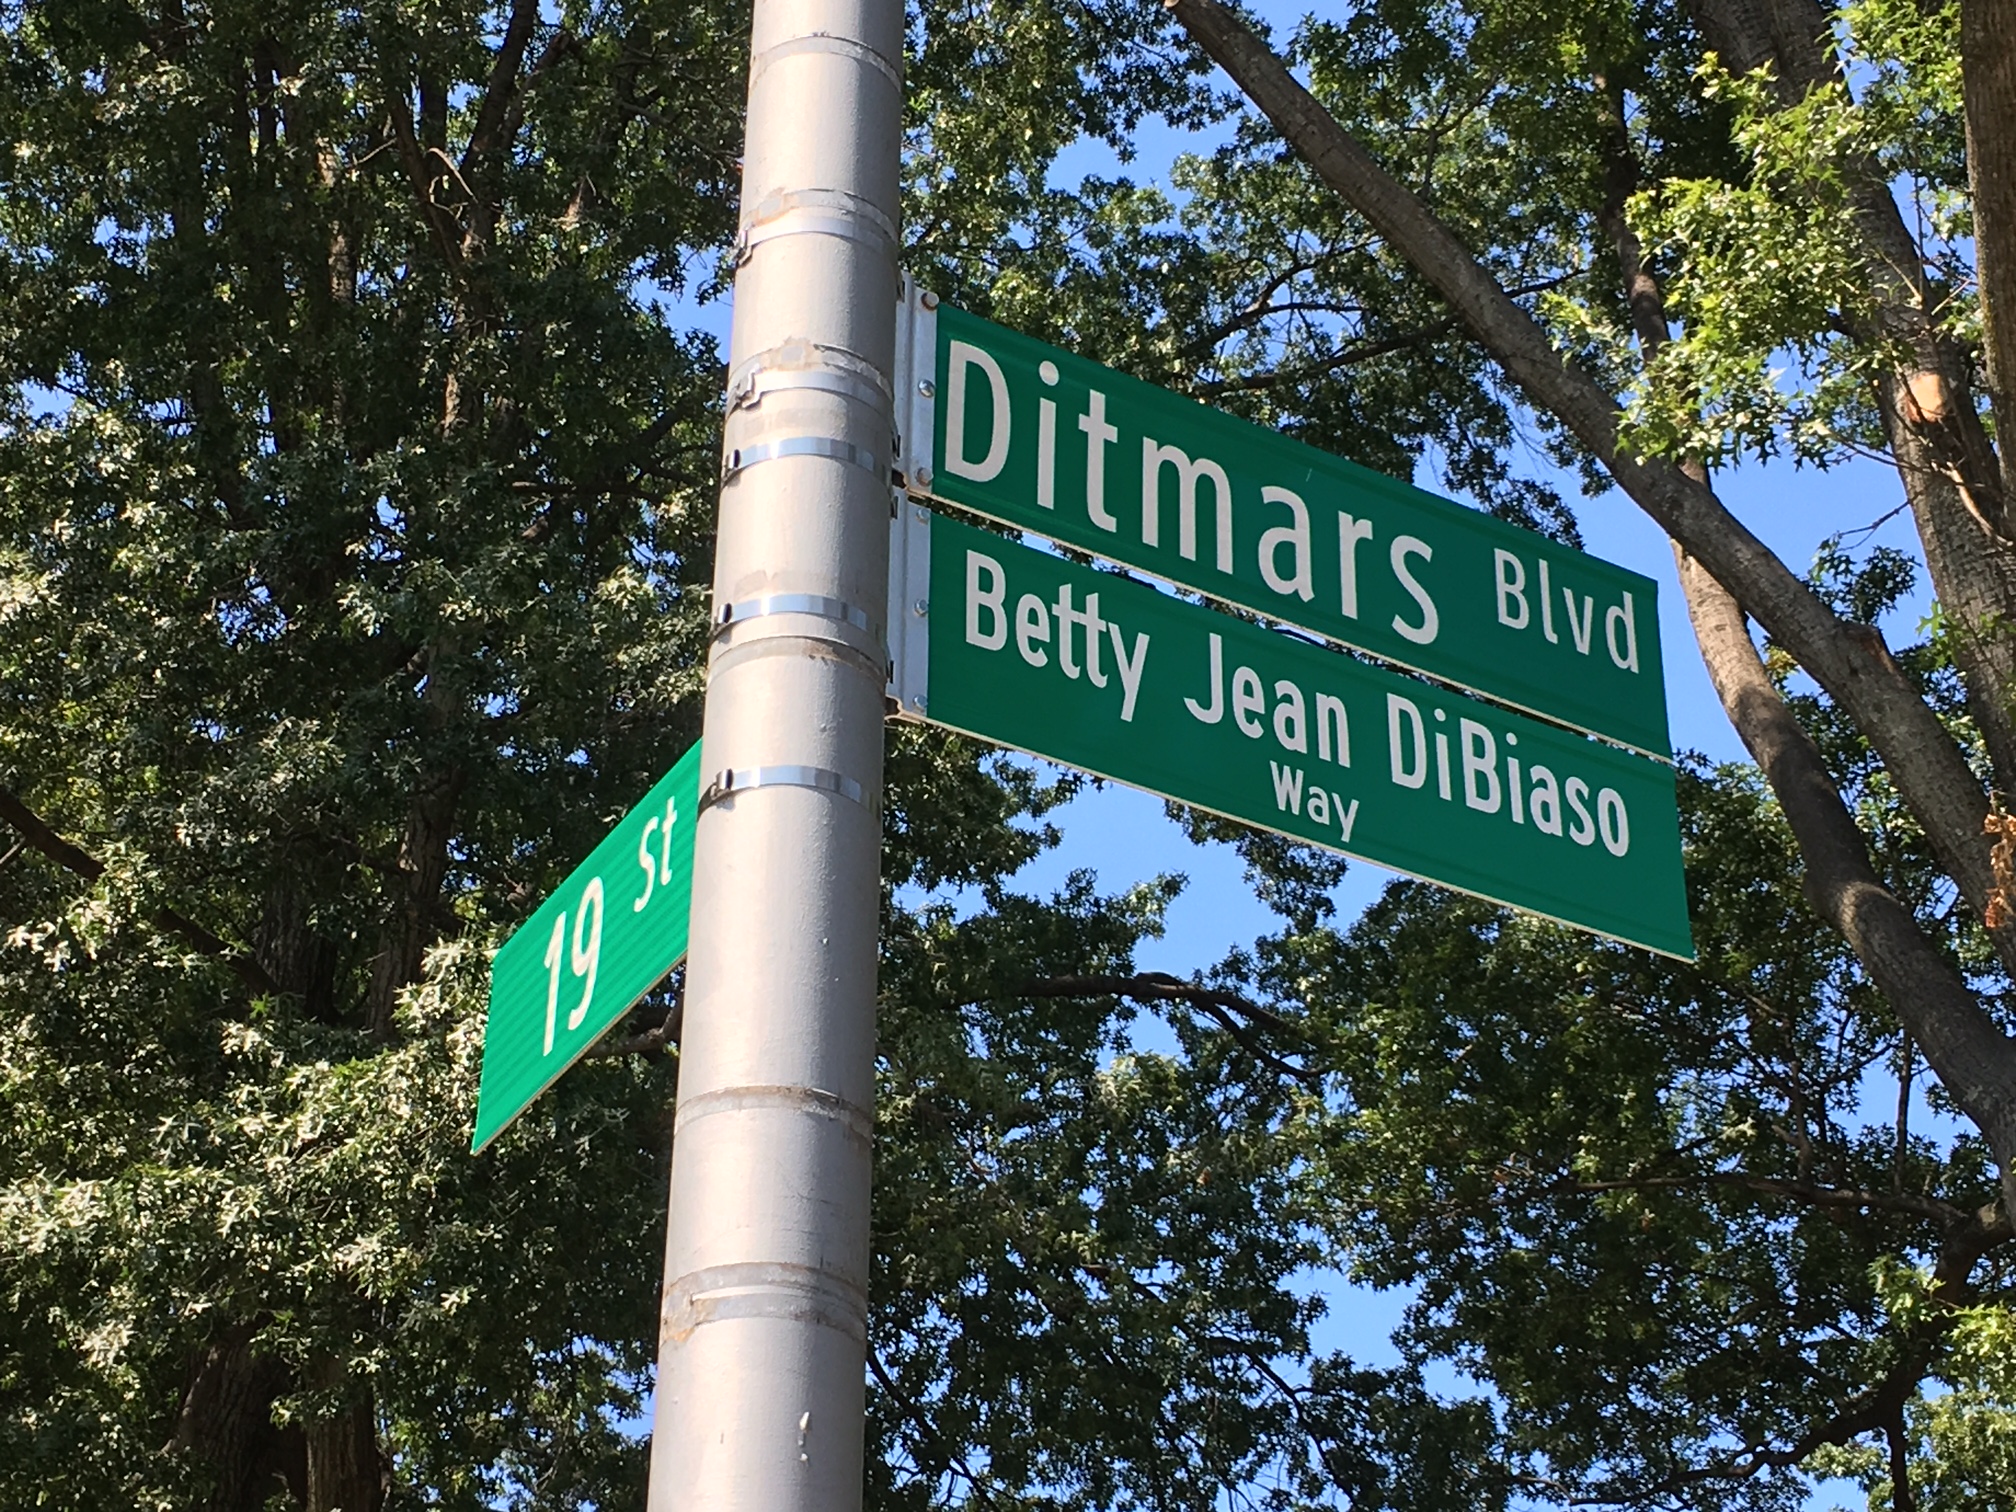 Street Renamed for Betty Jean DiBiaso